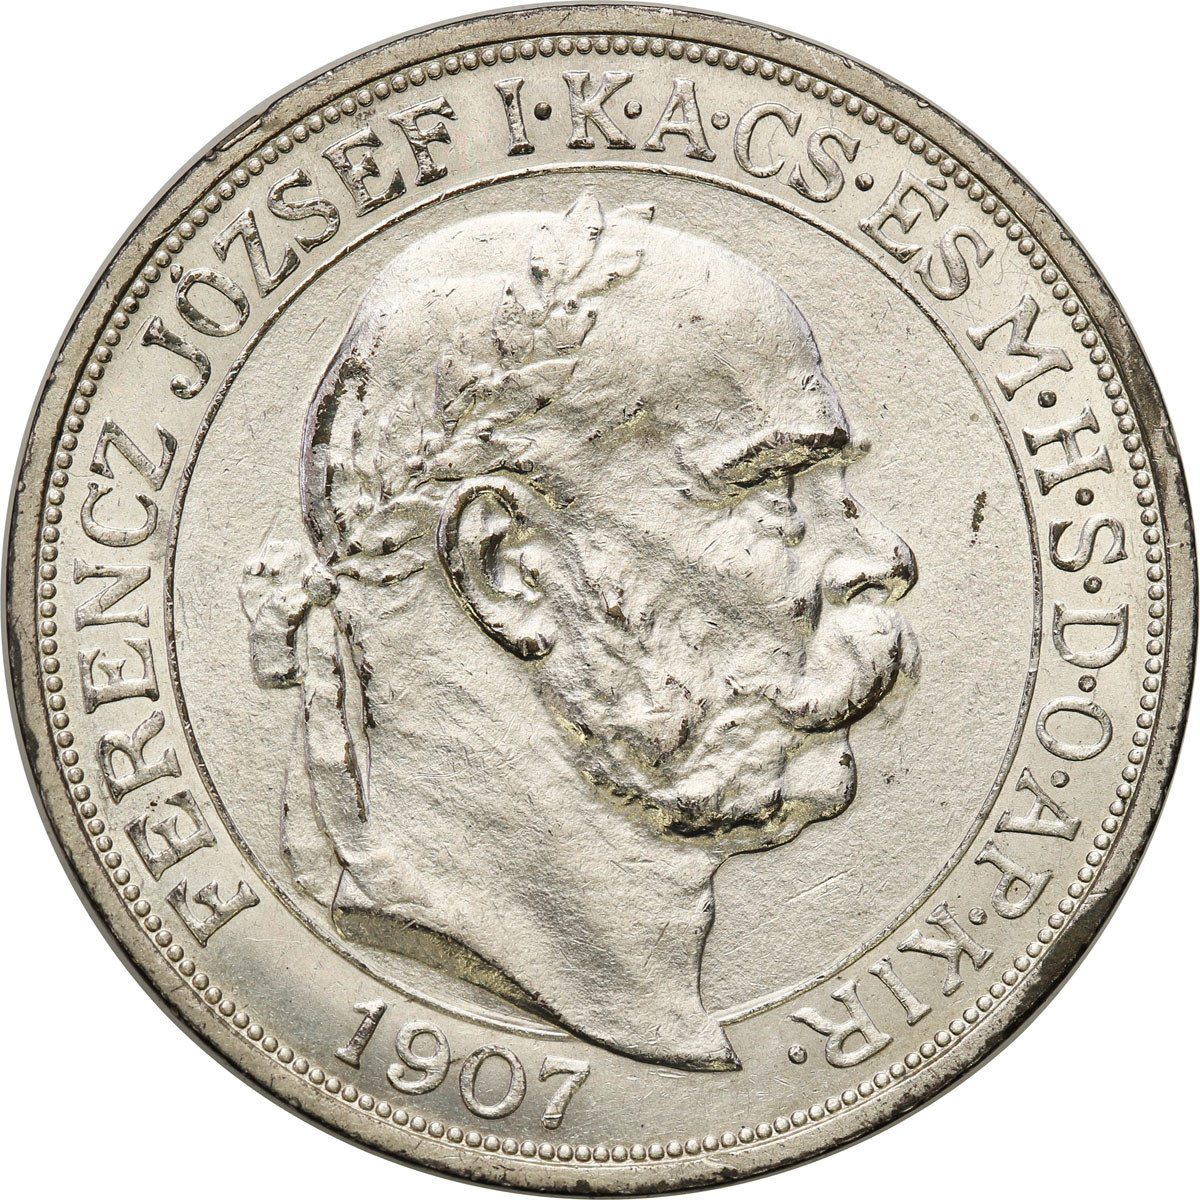 Węgry. Franciszek Józef I. 5 koron 1907 KB, Kremnica